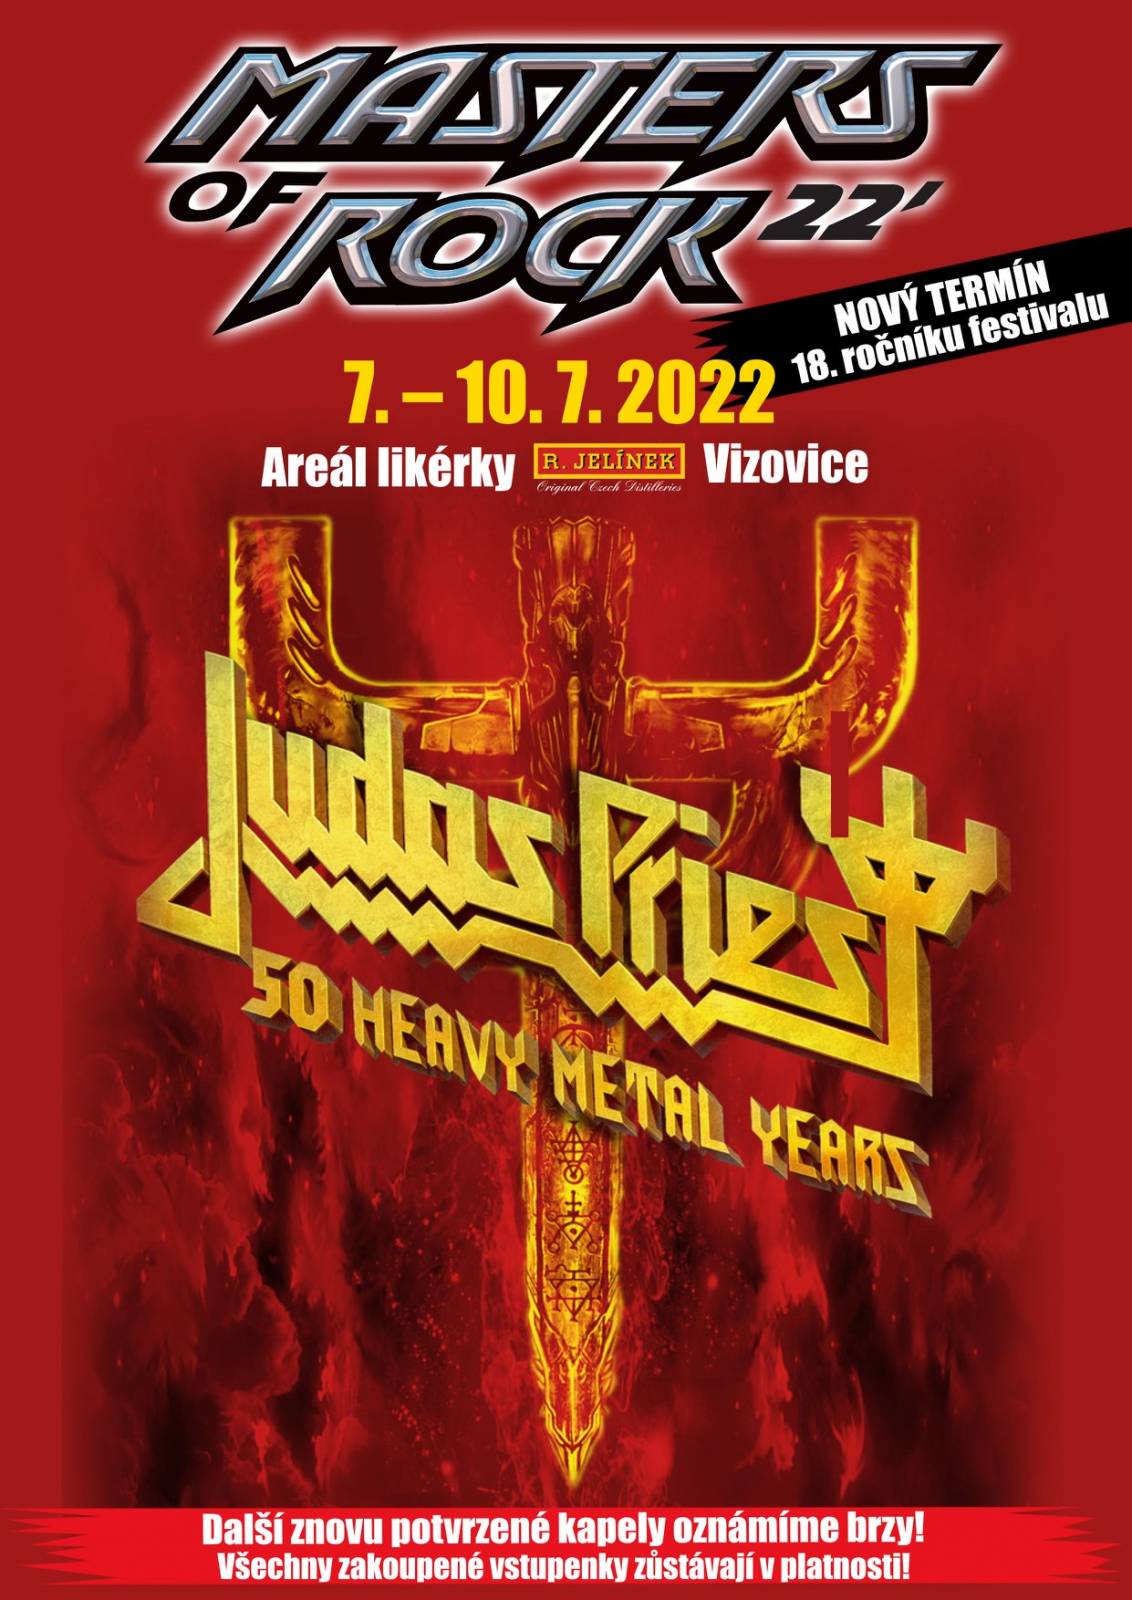 Festival Masters of Rock letos nebude, headlinery v roce 2022 zůstávají Judas Priest